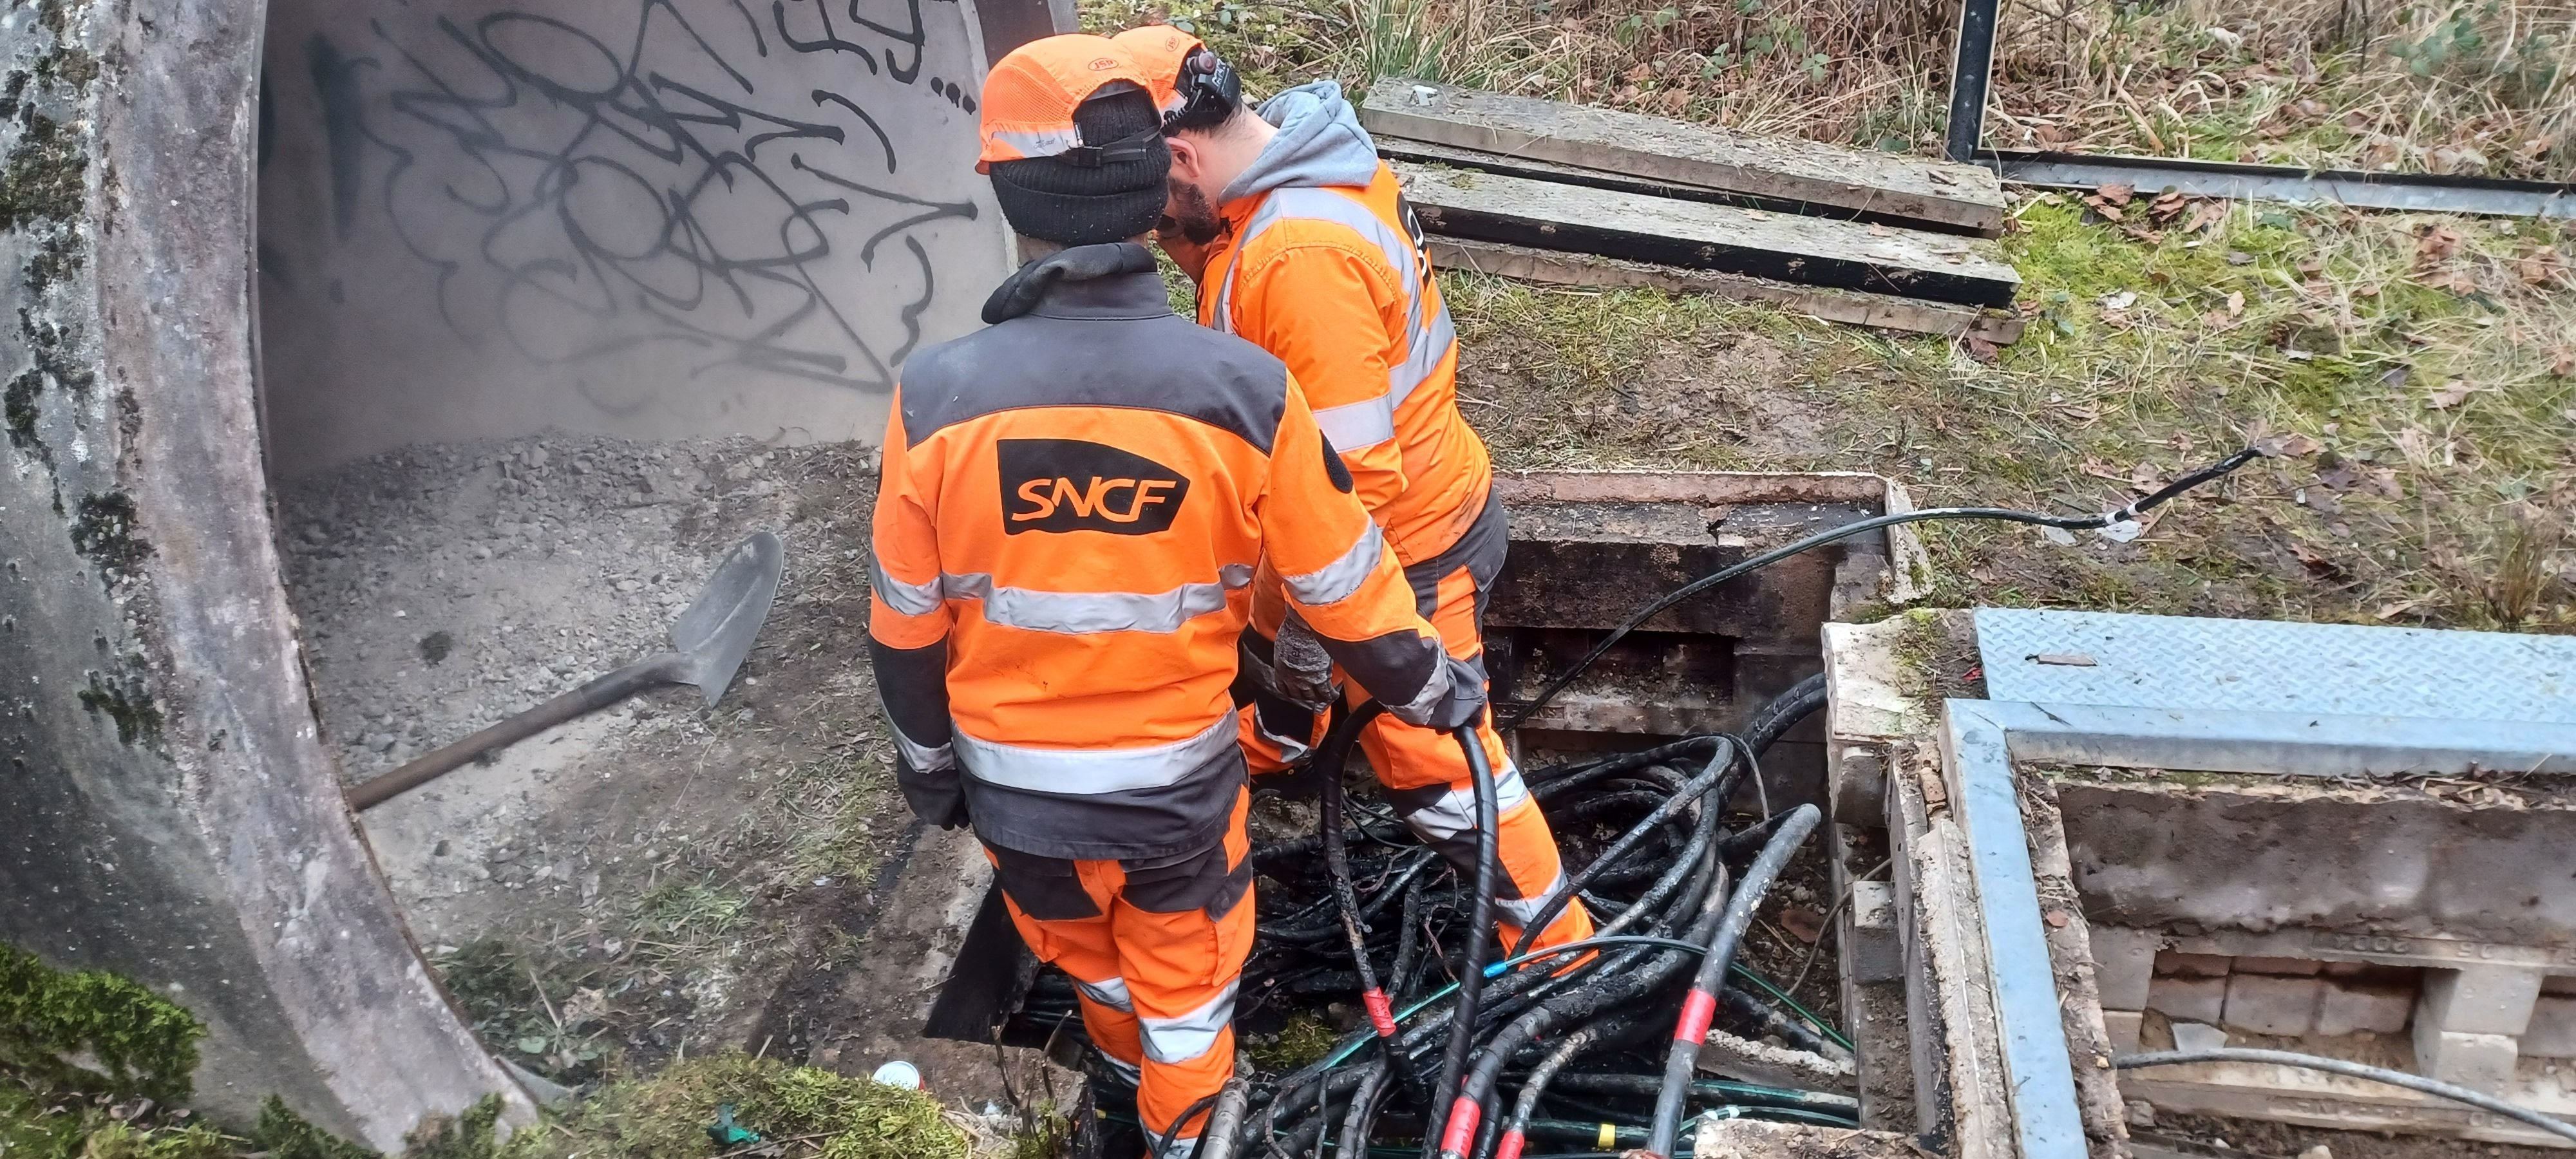 Environ 600 câbles de la SNCF ont été endommagés le 24 janvier par un incendie volontaire à Vaires-sur-Marne, sous la voie ferrée. L'absence de vidéosurveillance autour du site, notamment, complique la tâche des enquêteurs. LP/Jila Varoquier